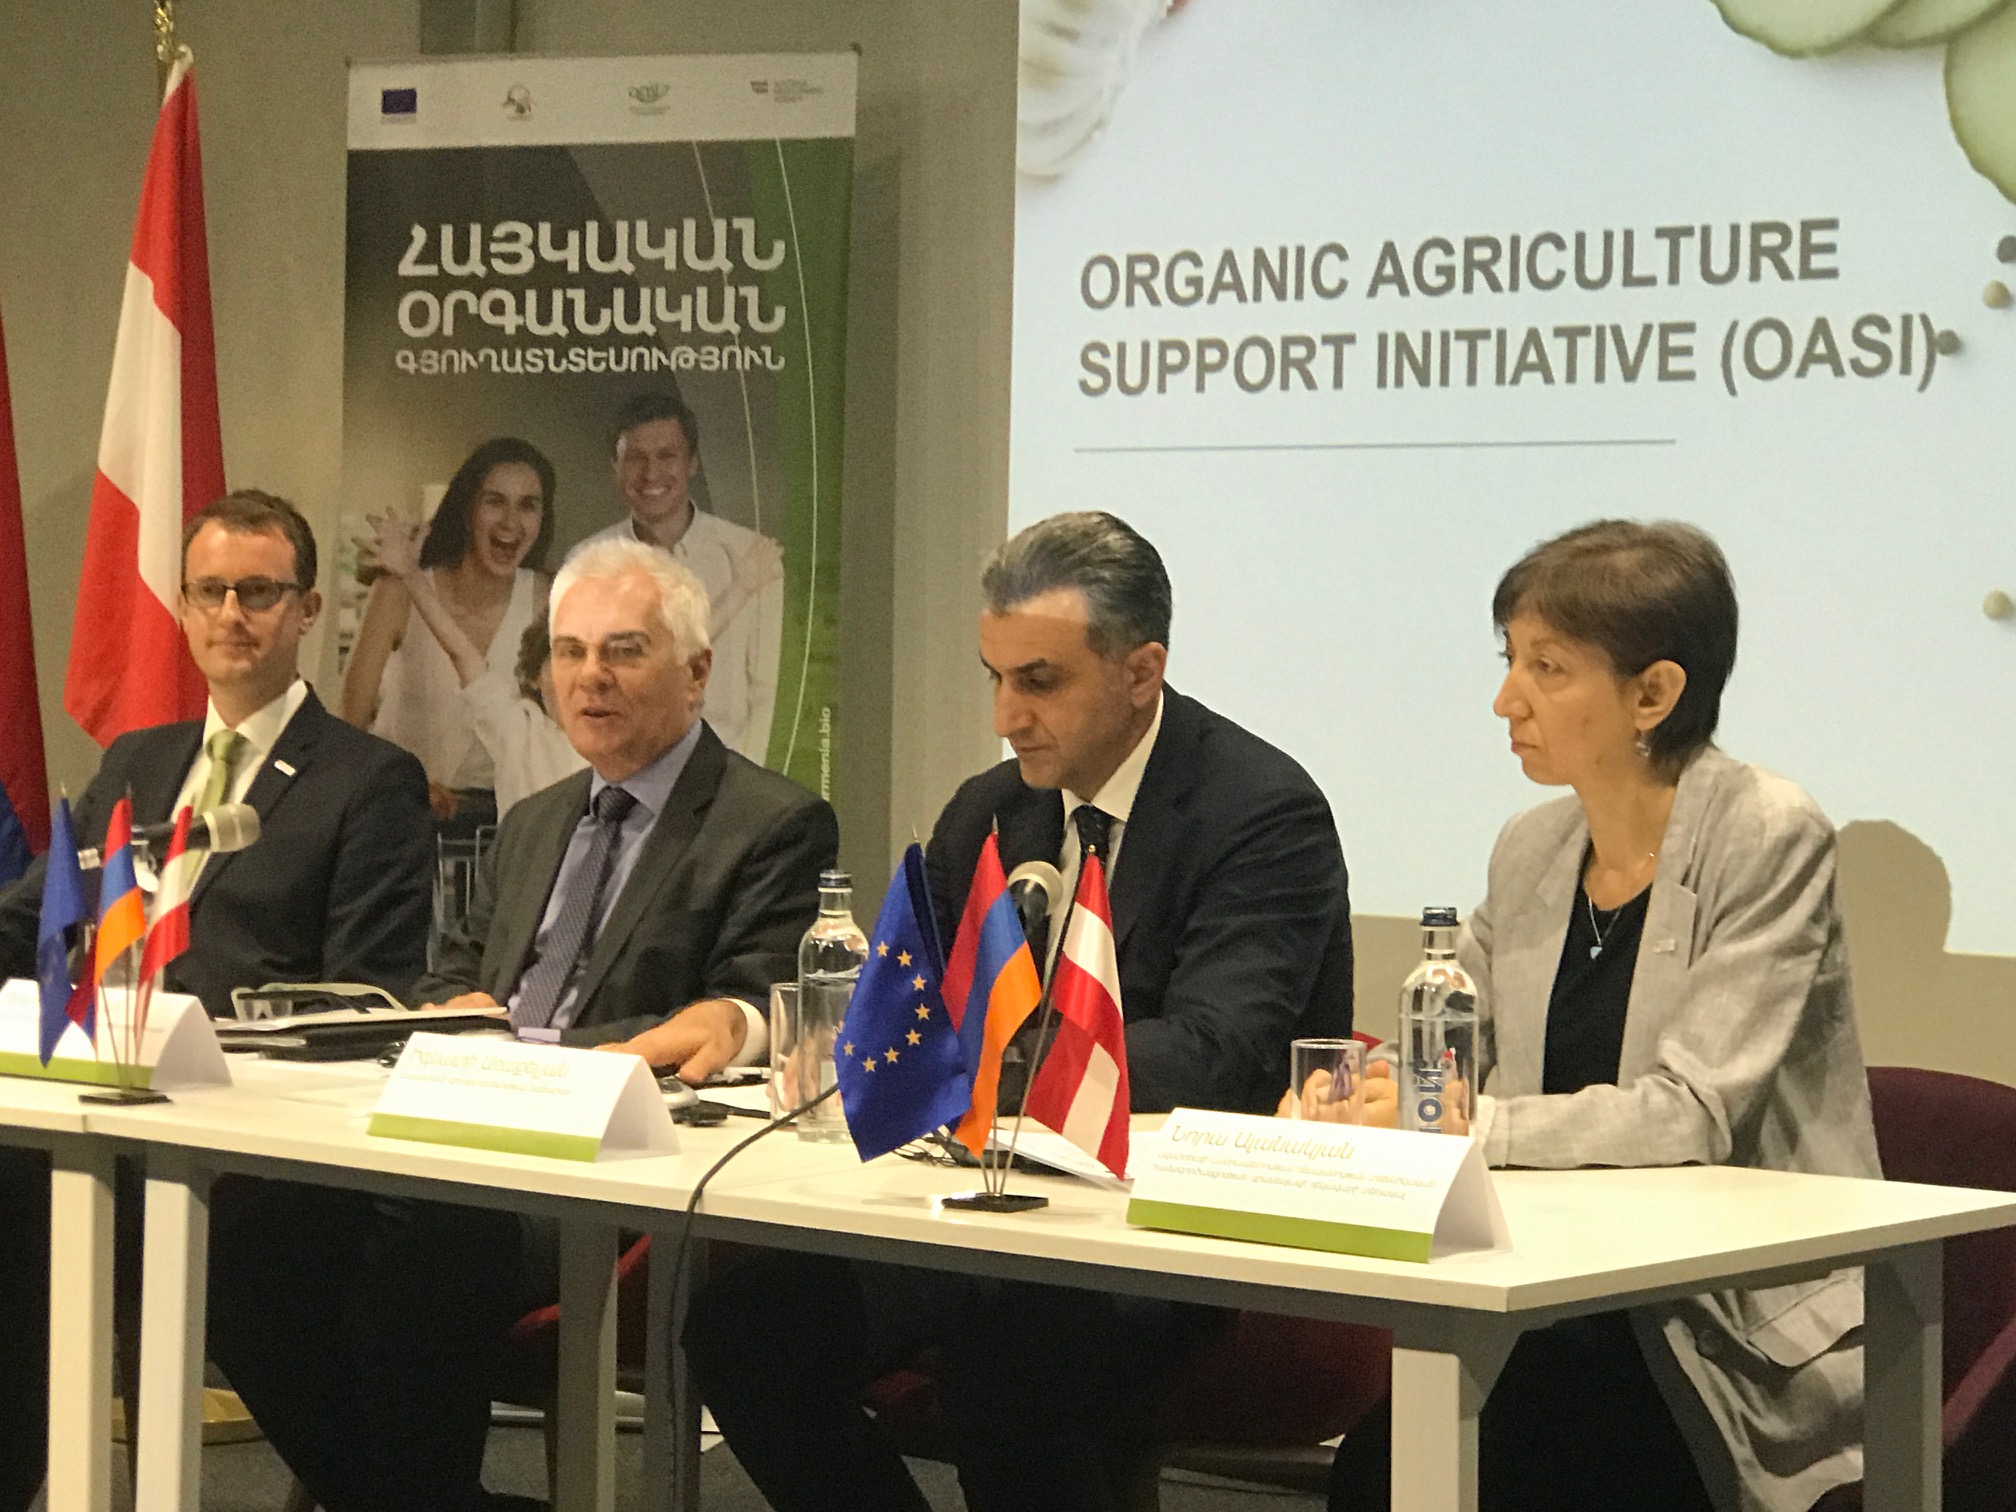 ЕС видит большие перспективы для армянской органической сельхозпродукции на европейском рынке